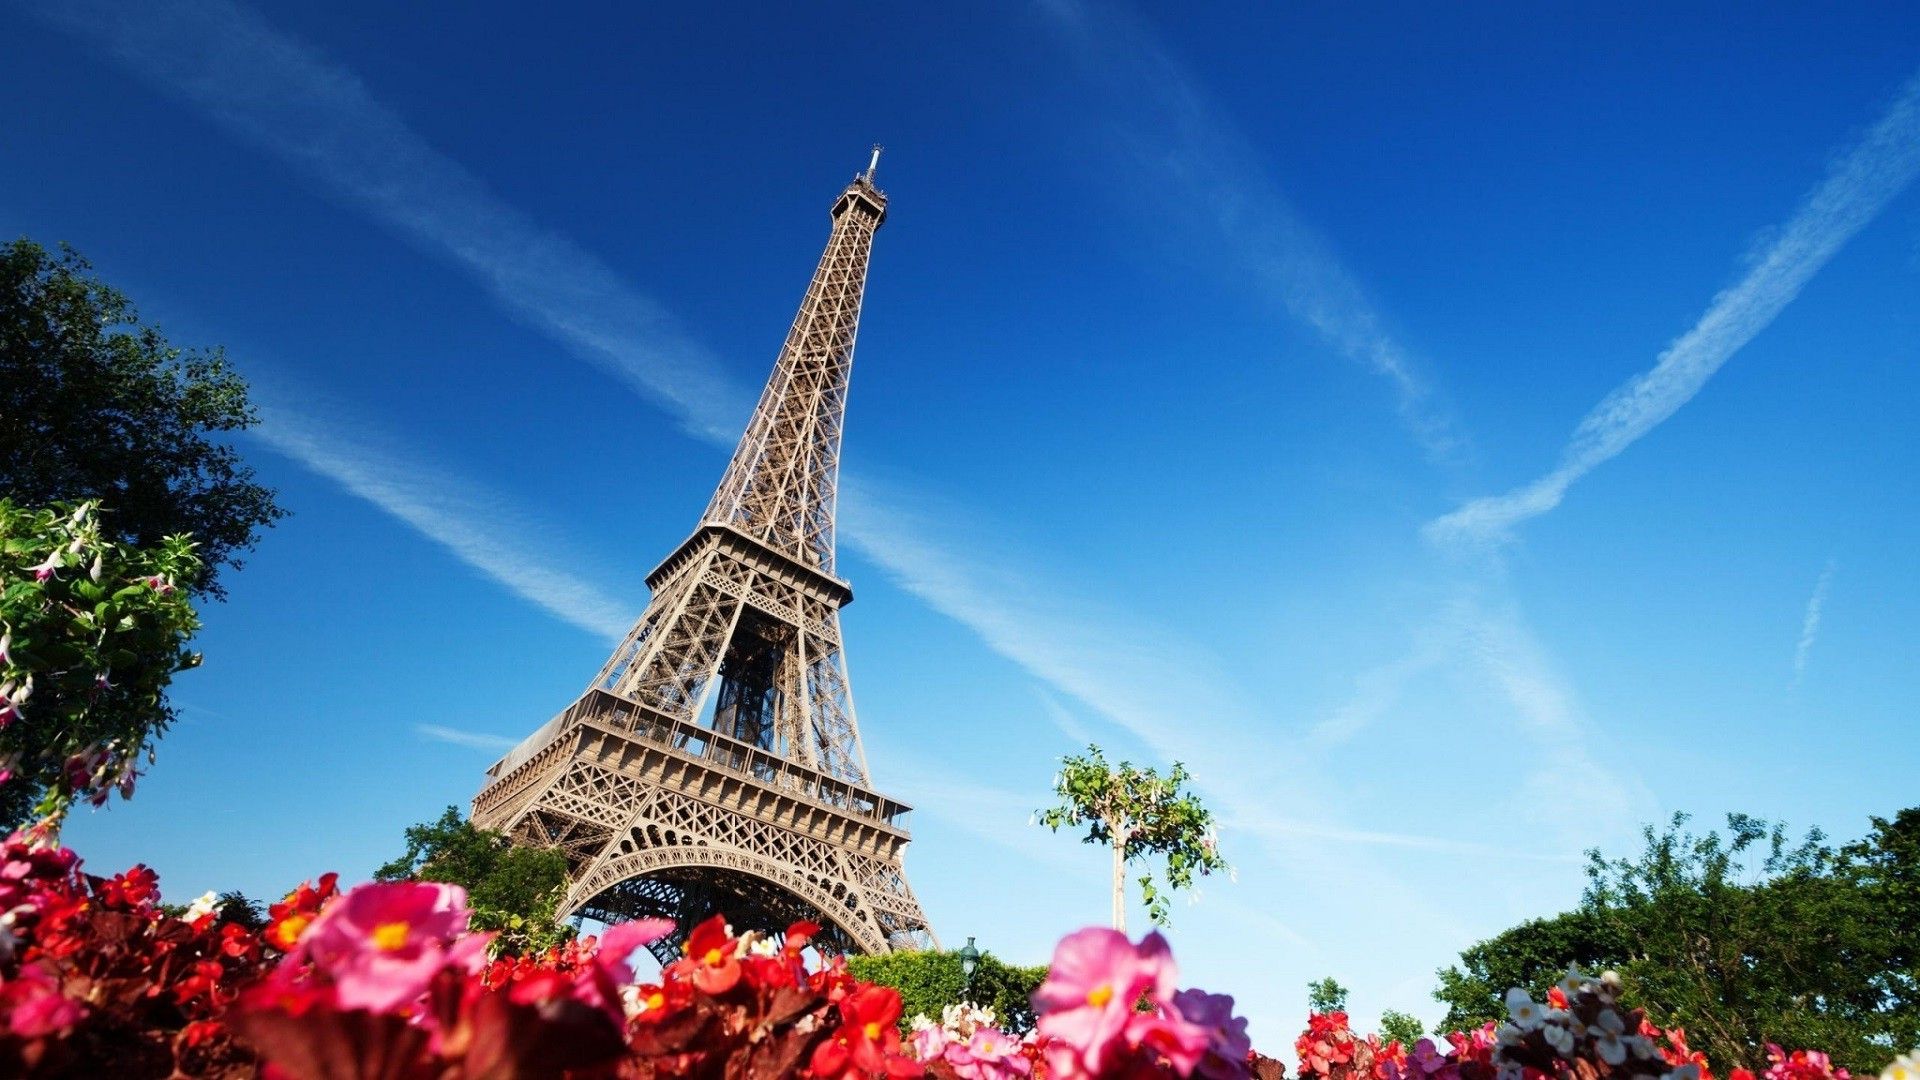 Eiffel Tower, Building, Architecture, Flowers, Paris, France